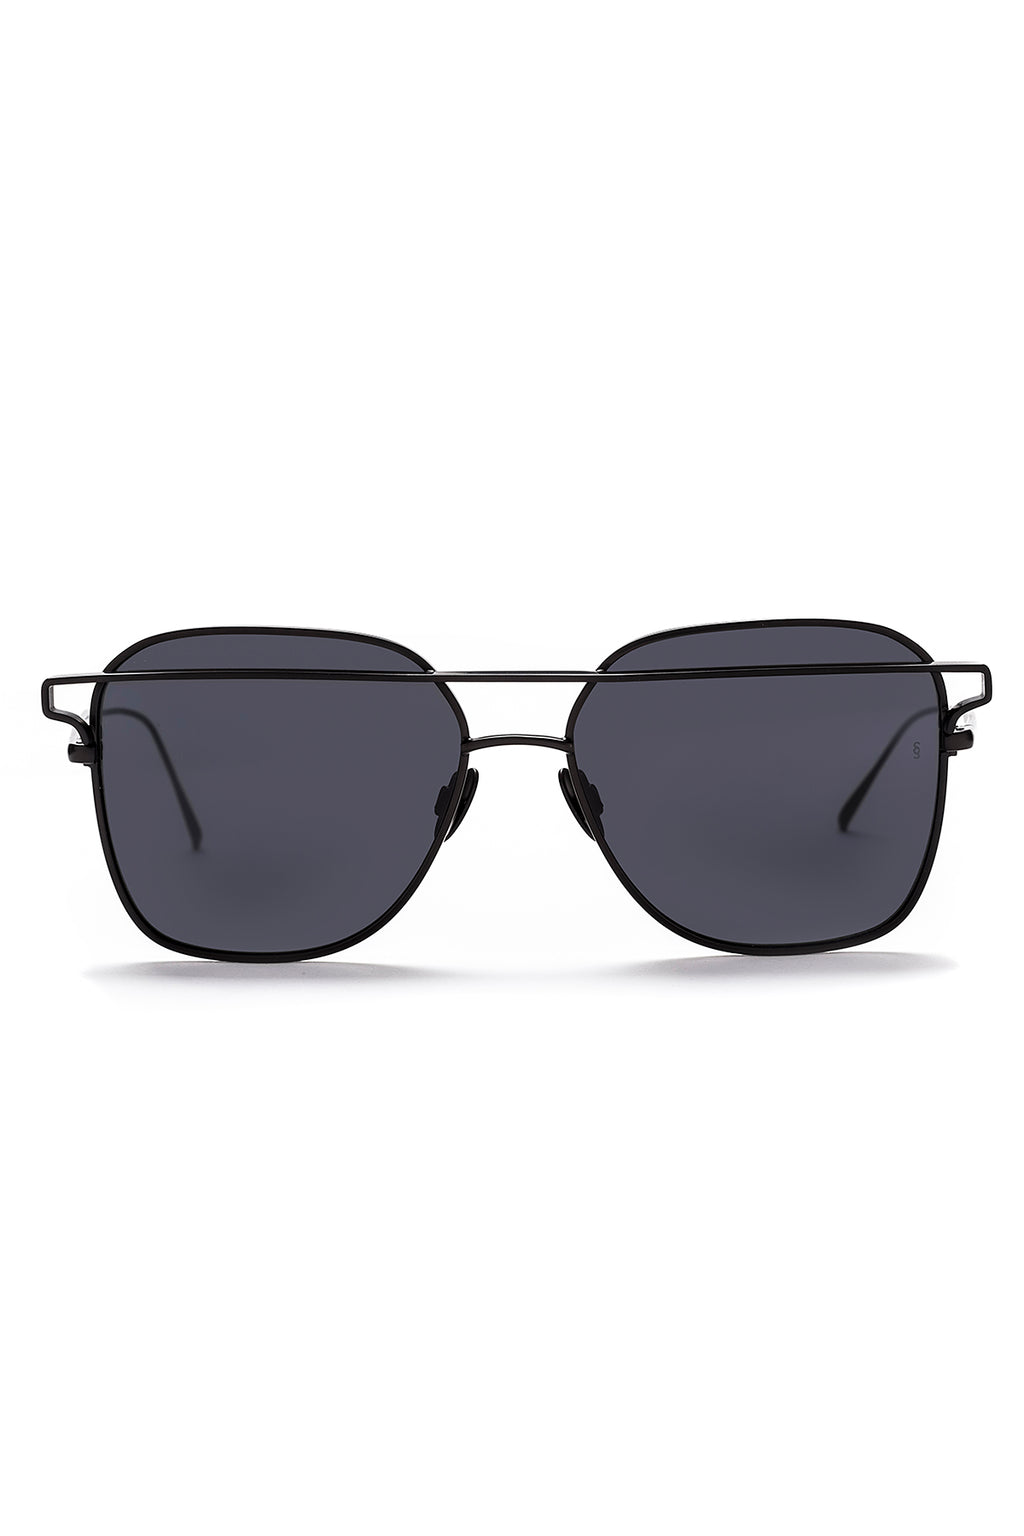 JESSE Sunglasses, Black